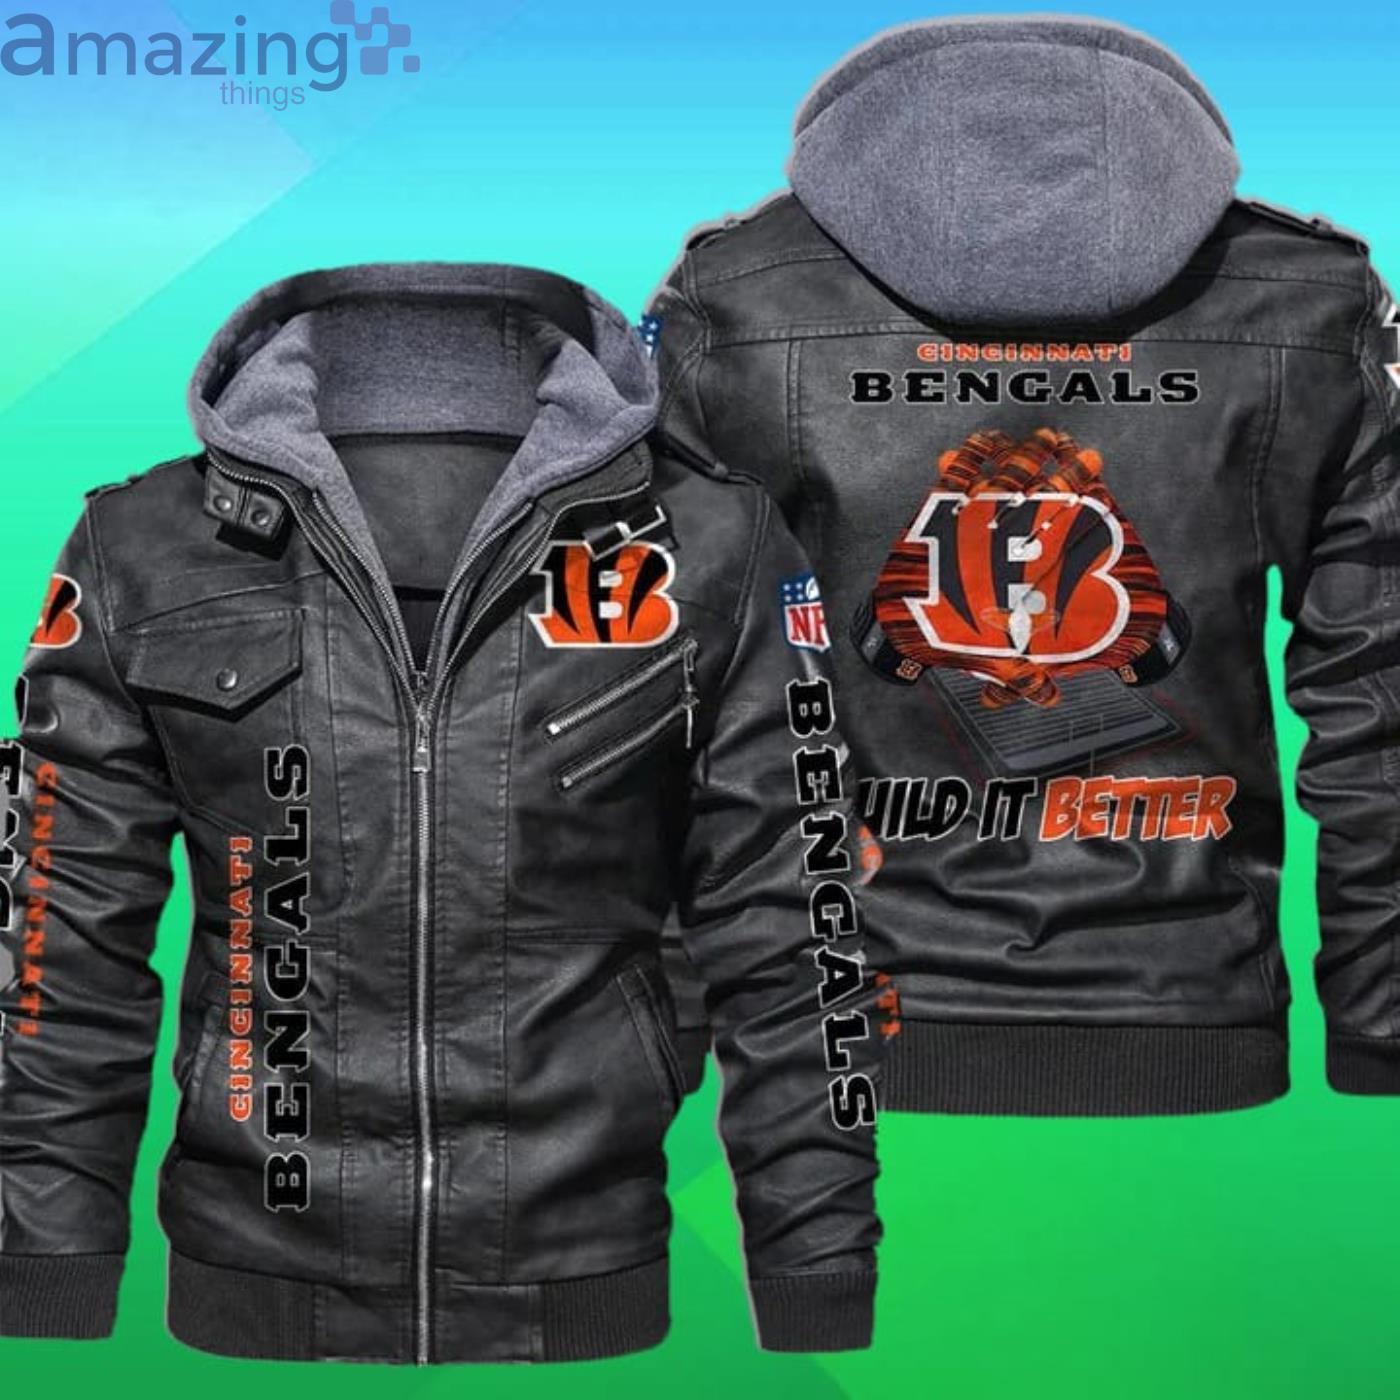 Cincinnati Bengals Nfl Wild It Better 2D Leather Jacket